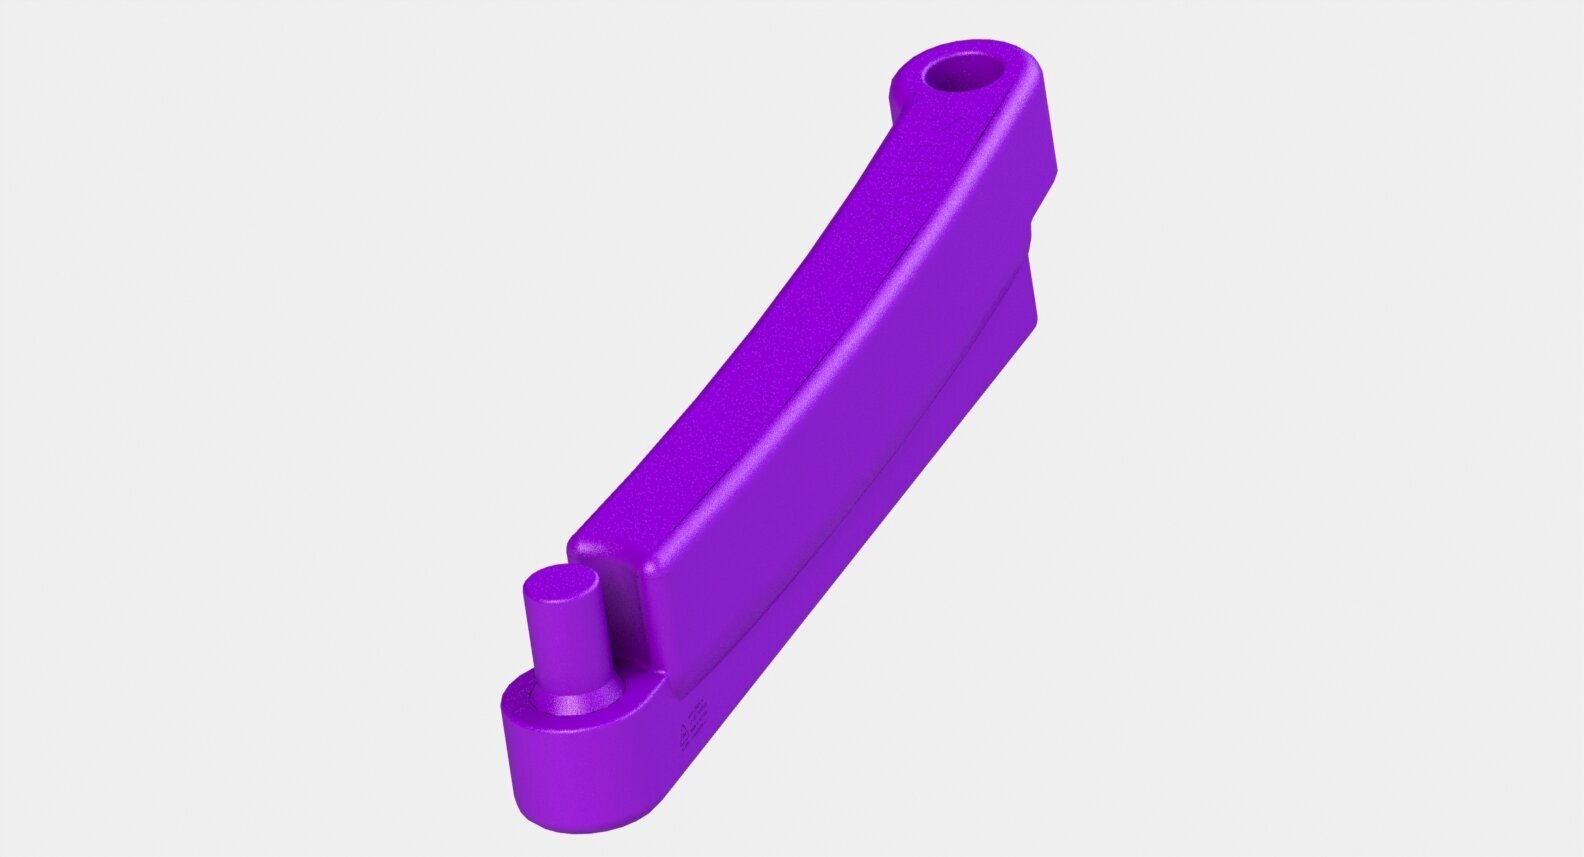 Элемент песочницы 2KIDS М цвет фиолетовый